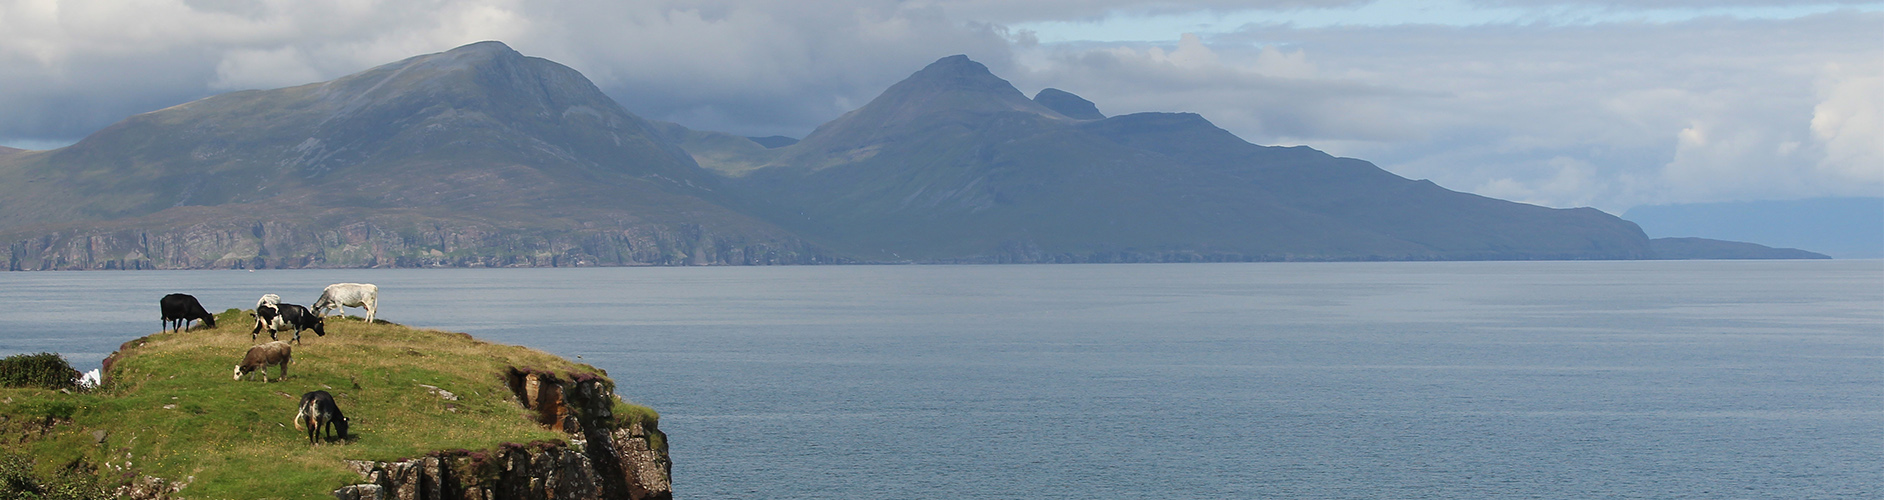 Scottish Isles Cruise | Argyll Cruising | Majestic Scotland |Cruise Hebrides